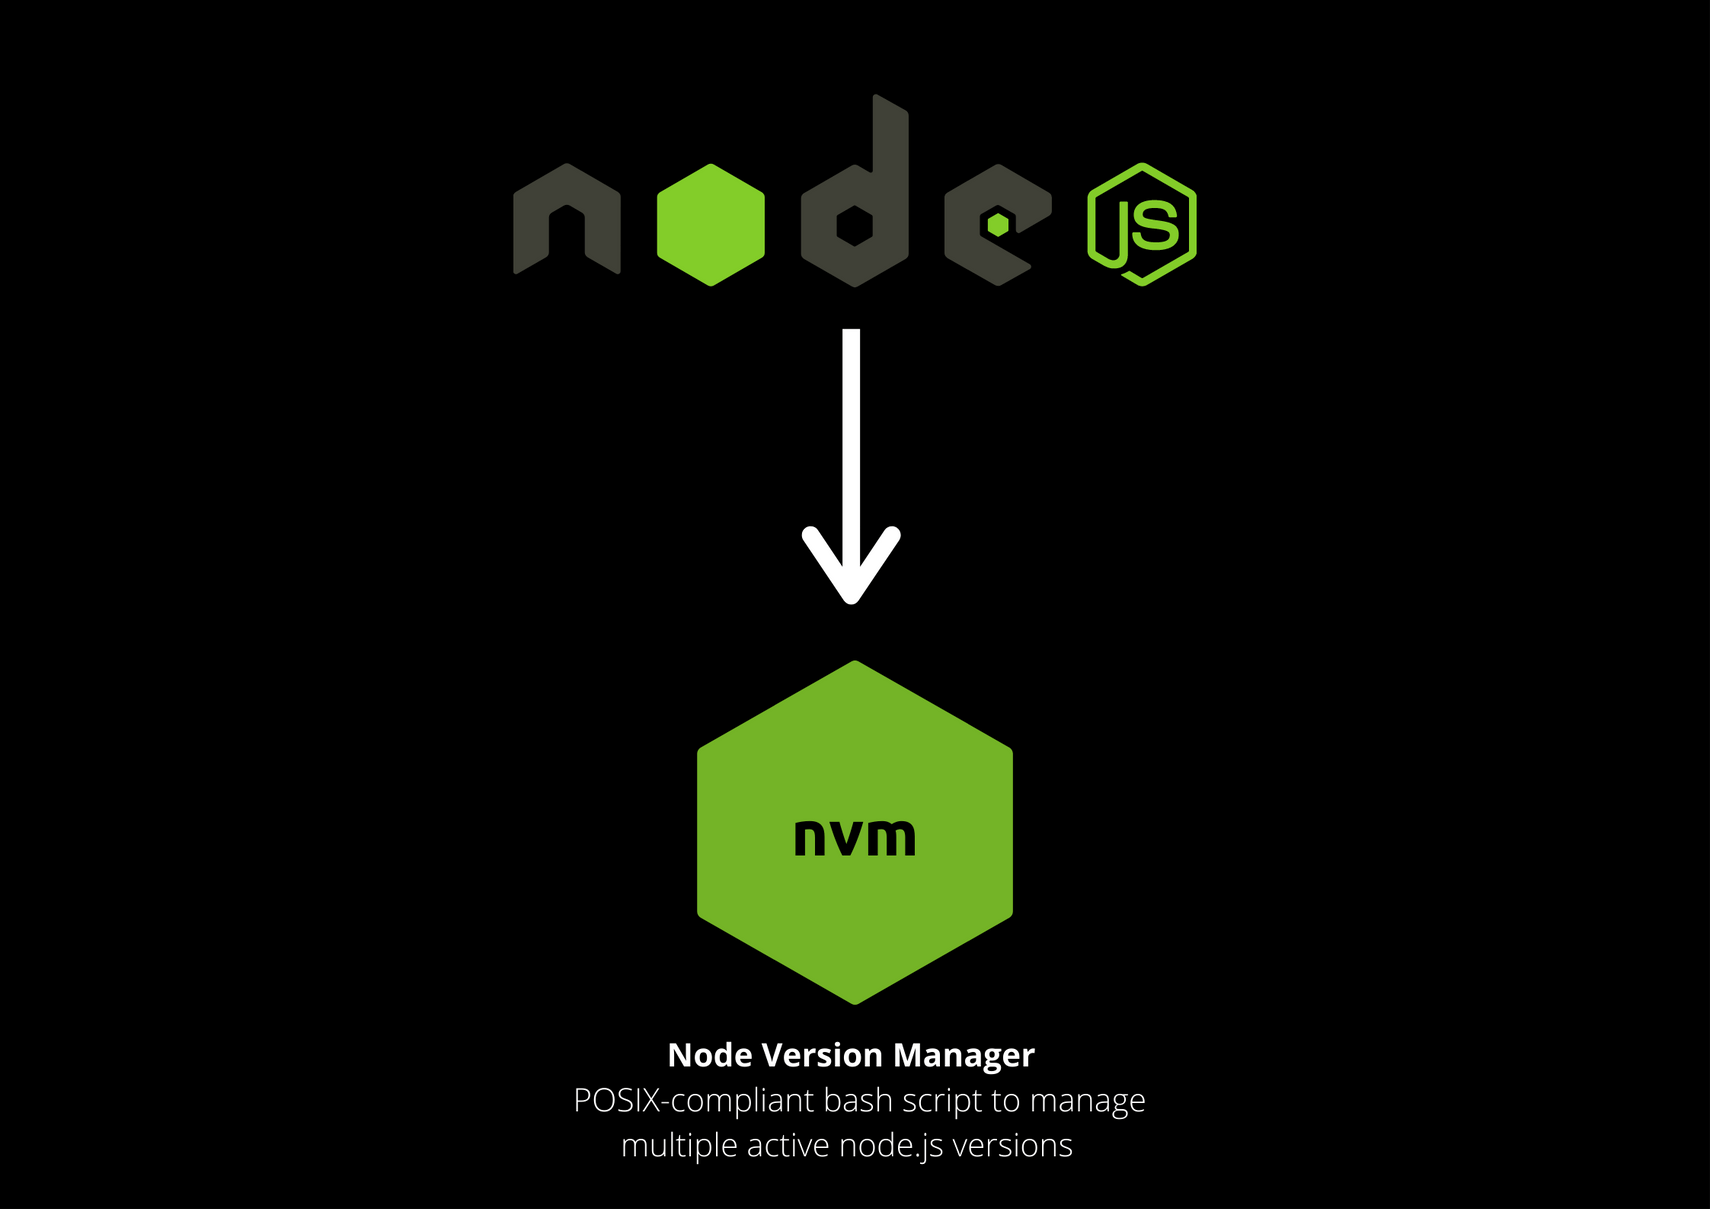 nvm install node